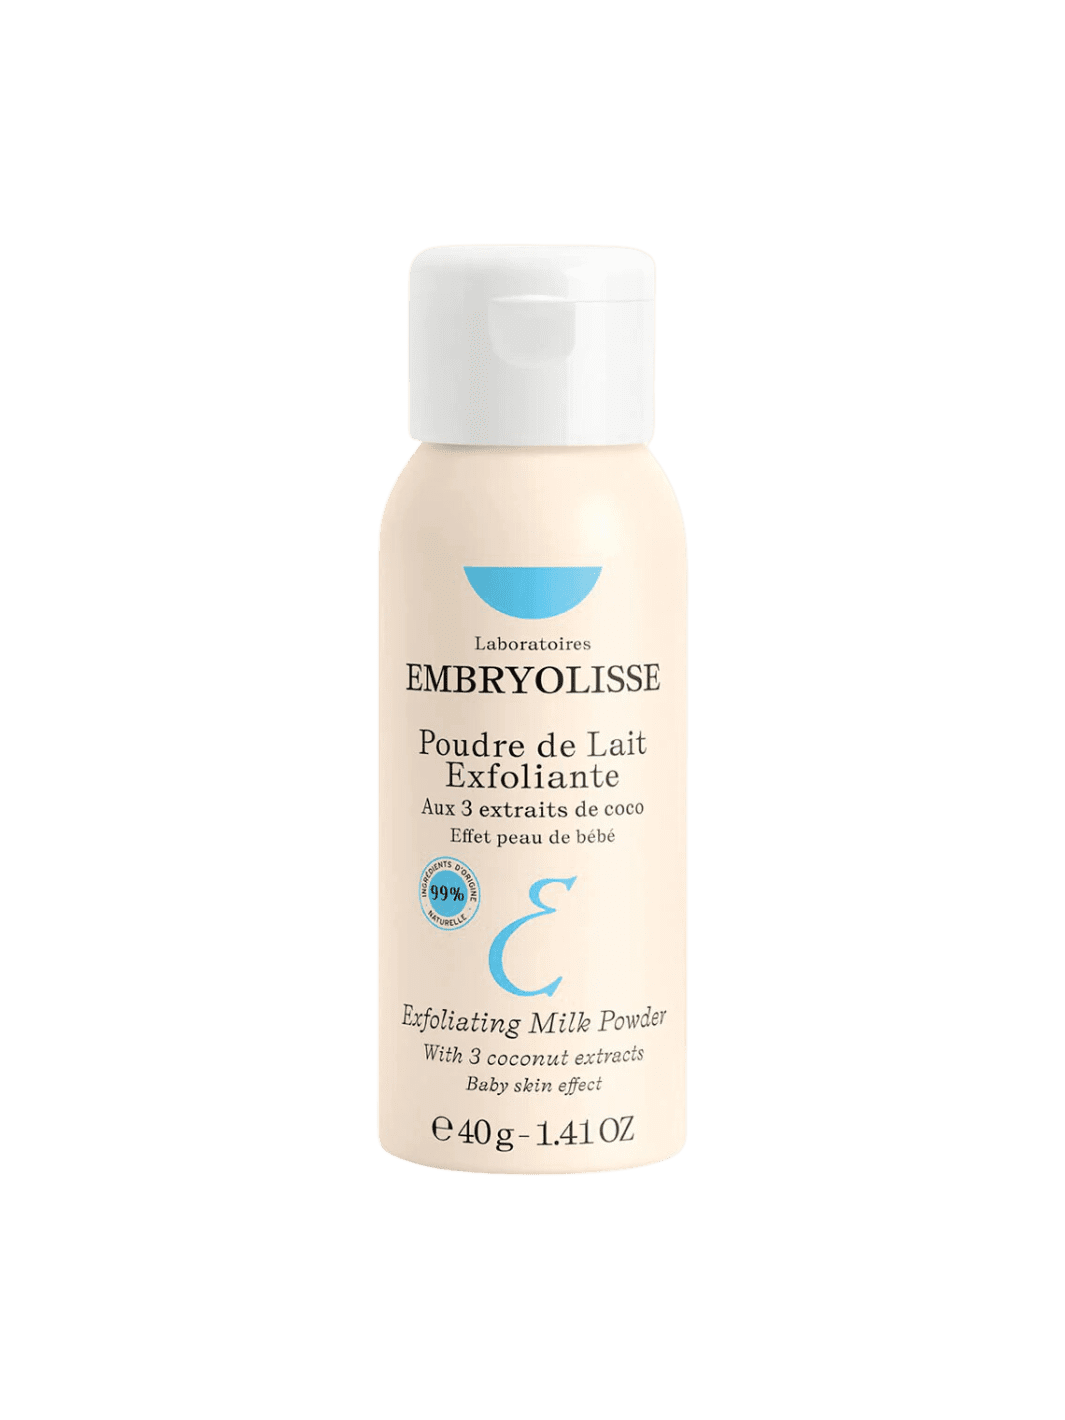 Twentyseven Toronto - Embryolisse Poudre de Lait Exfoliante / Exfoliating Milk Powder - Full Size 40g